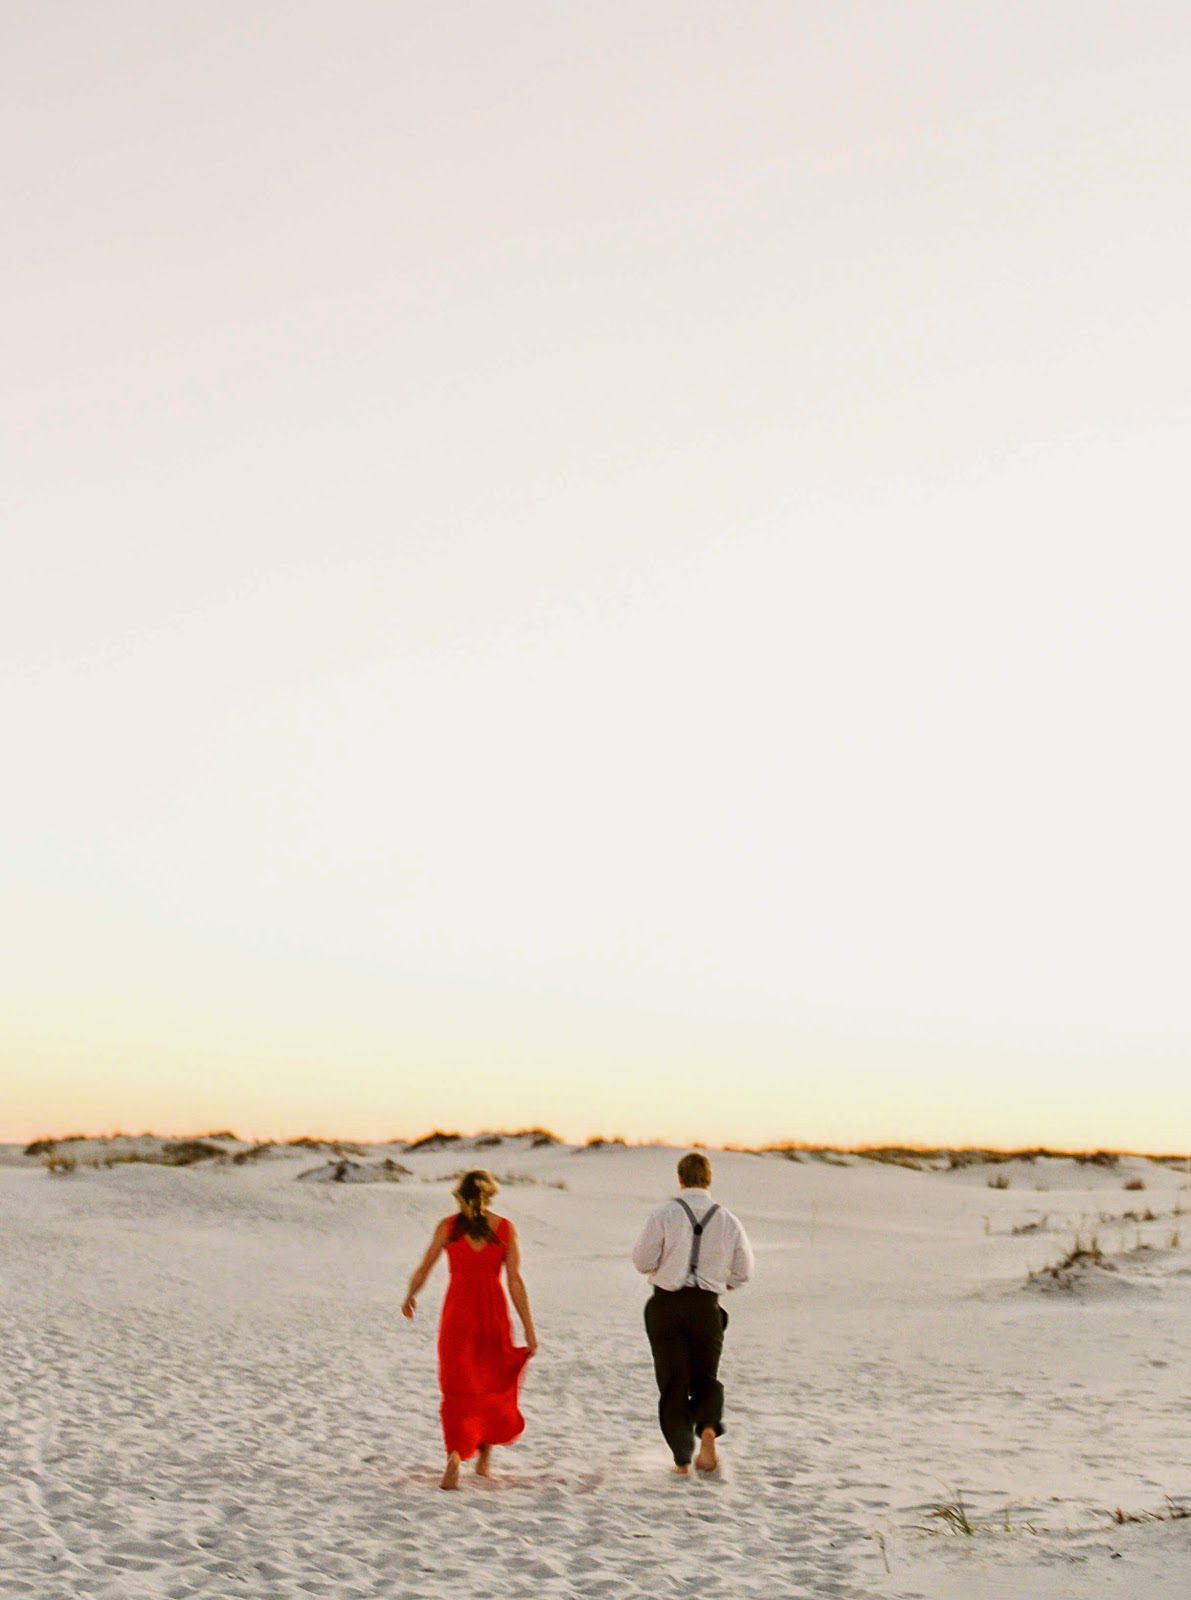 A couple runs on the beach in Destin, Florida as the sun sets.